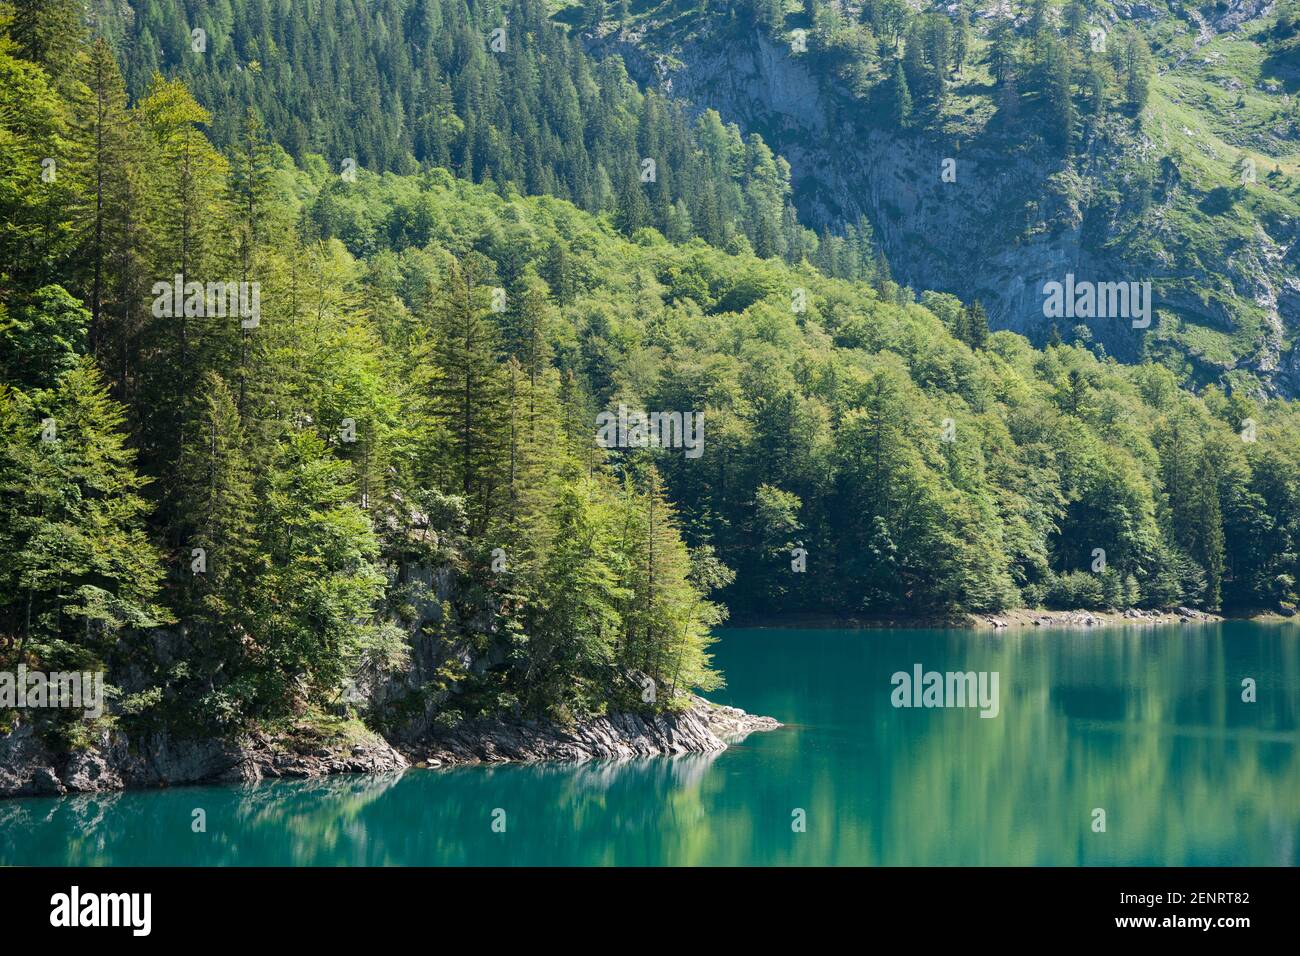 Detalle de bosque en primavera bordeando un lago alpino verde en un día soleado, Austria Foto de stock